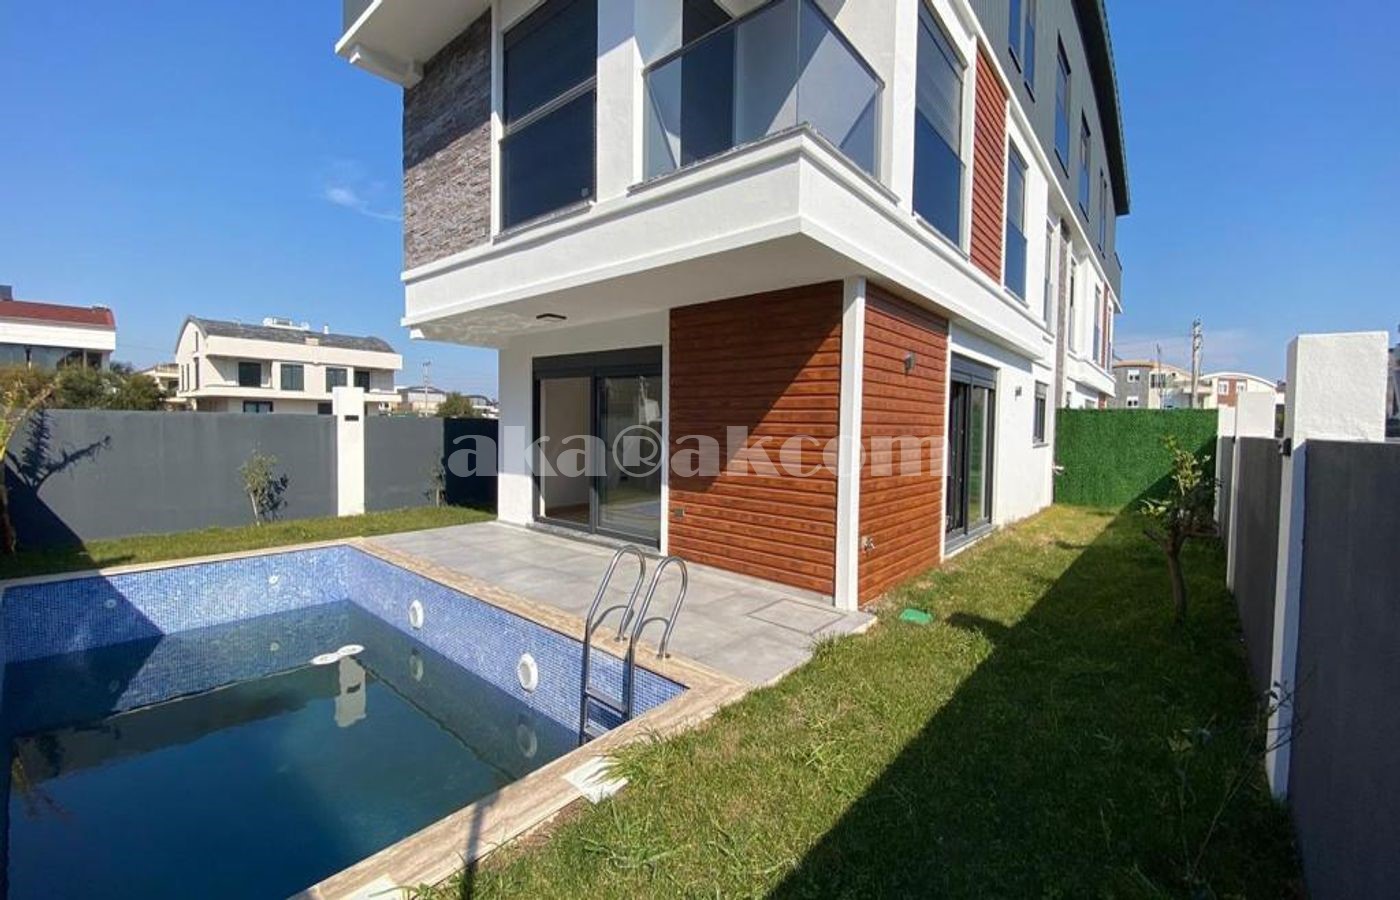 Detached villa for sale in Antalya Muratpasha